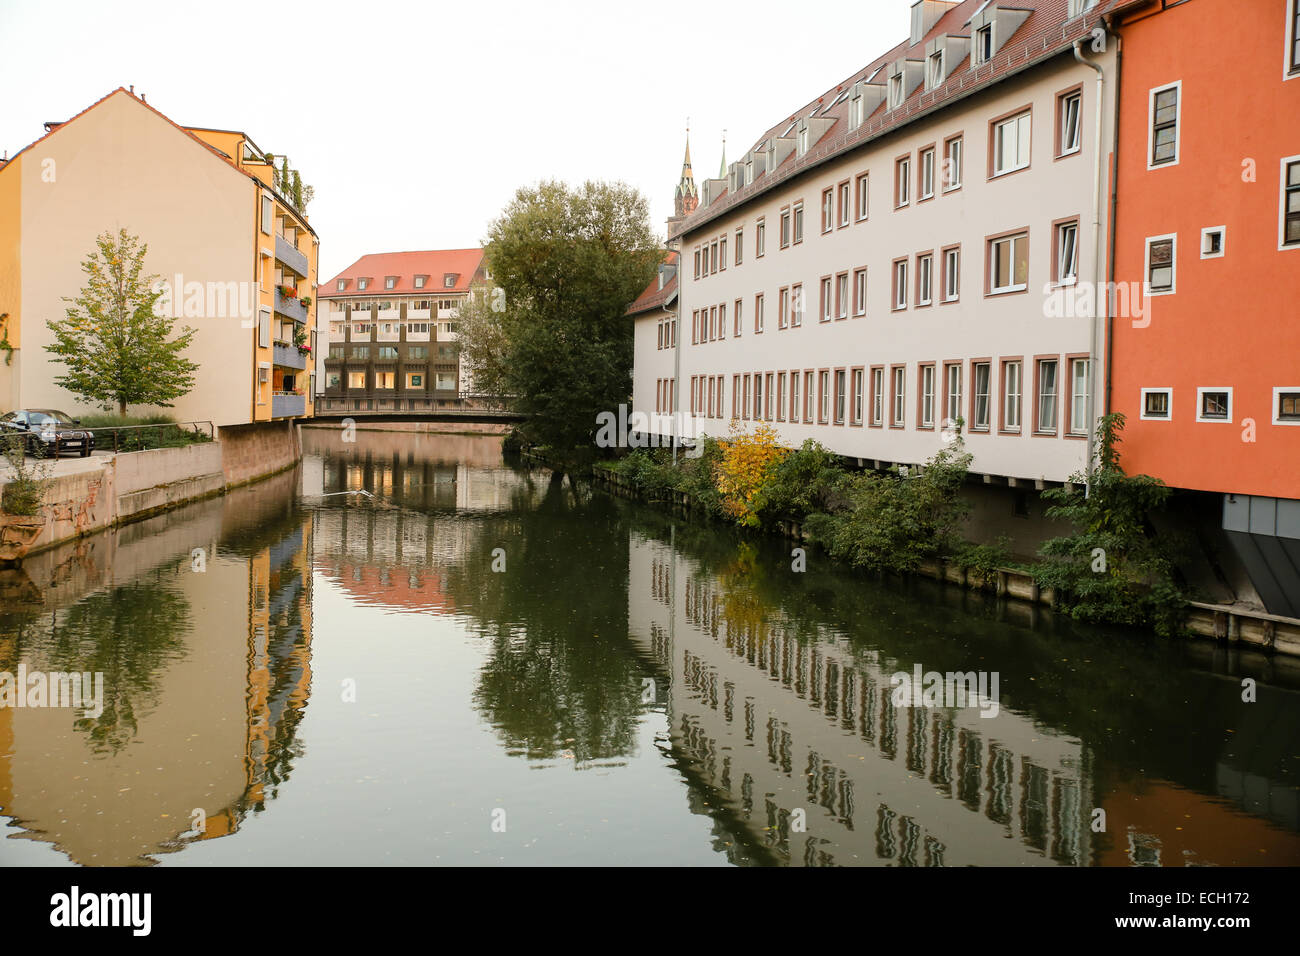 La rivière Pegnitz Nuremberg nuremberg vieille maison historique du bâtiment Banque D'Images